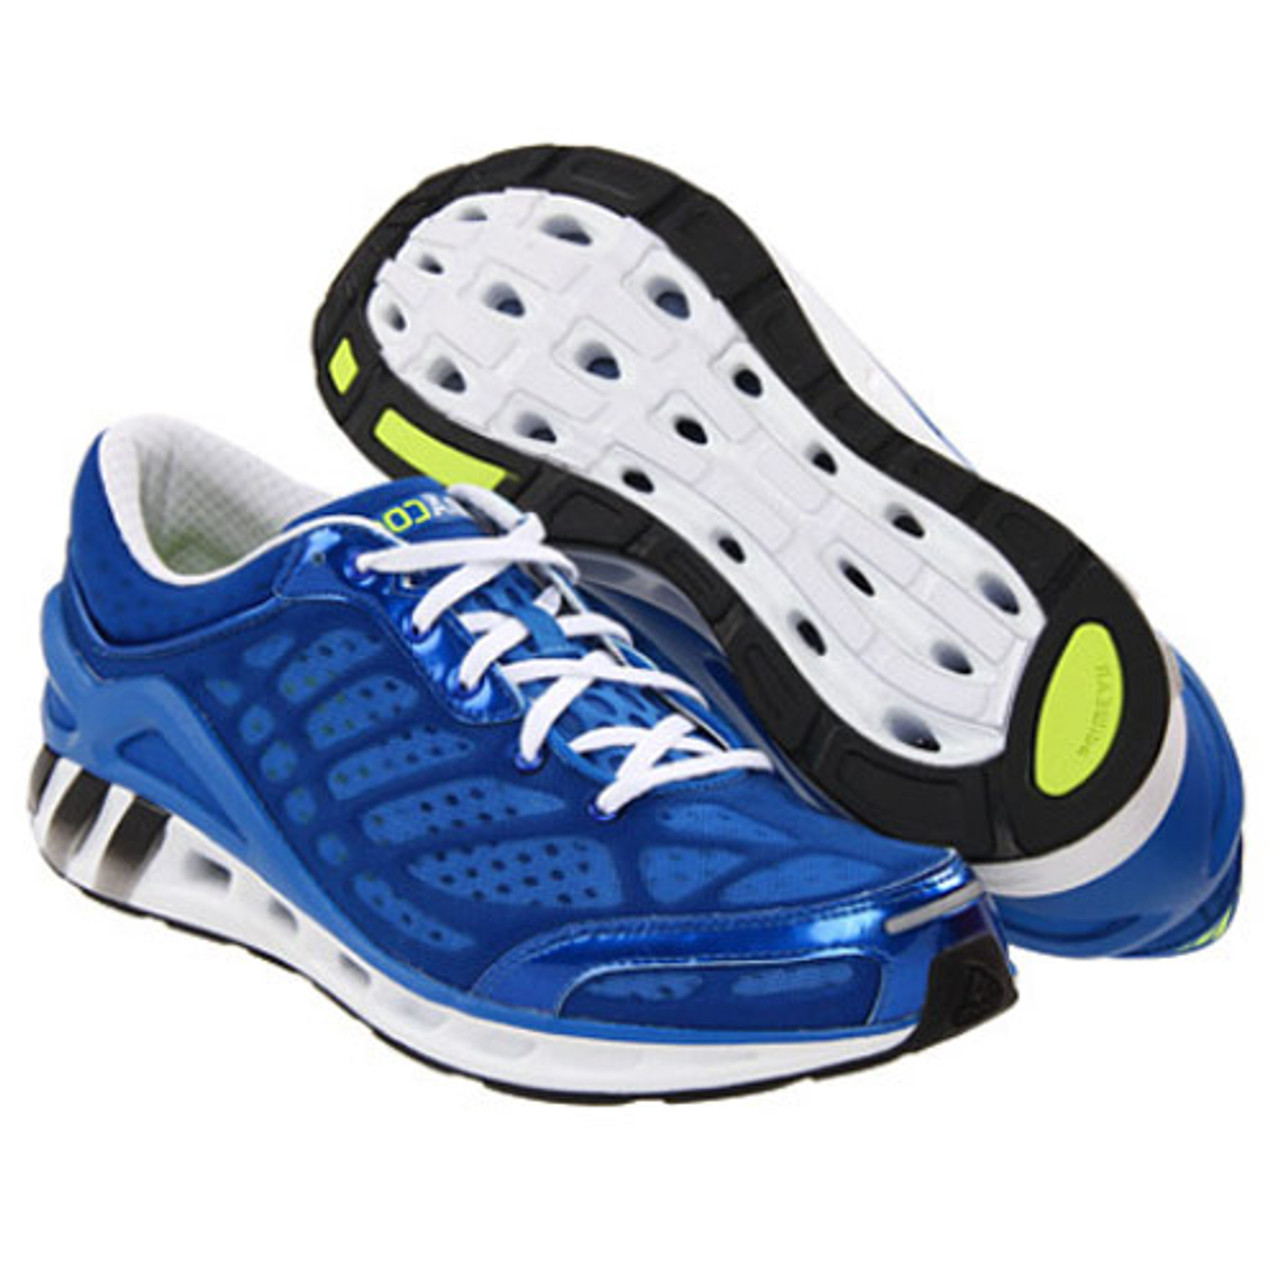 CC Blue - | Discount Adidas Men's Athletic Shoes & - Shoolu.com | Shoolu.com